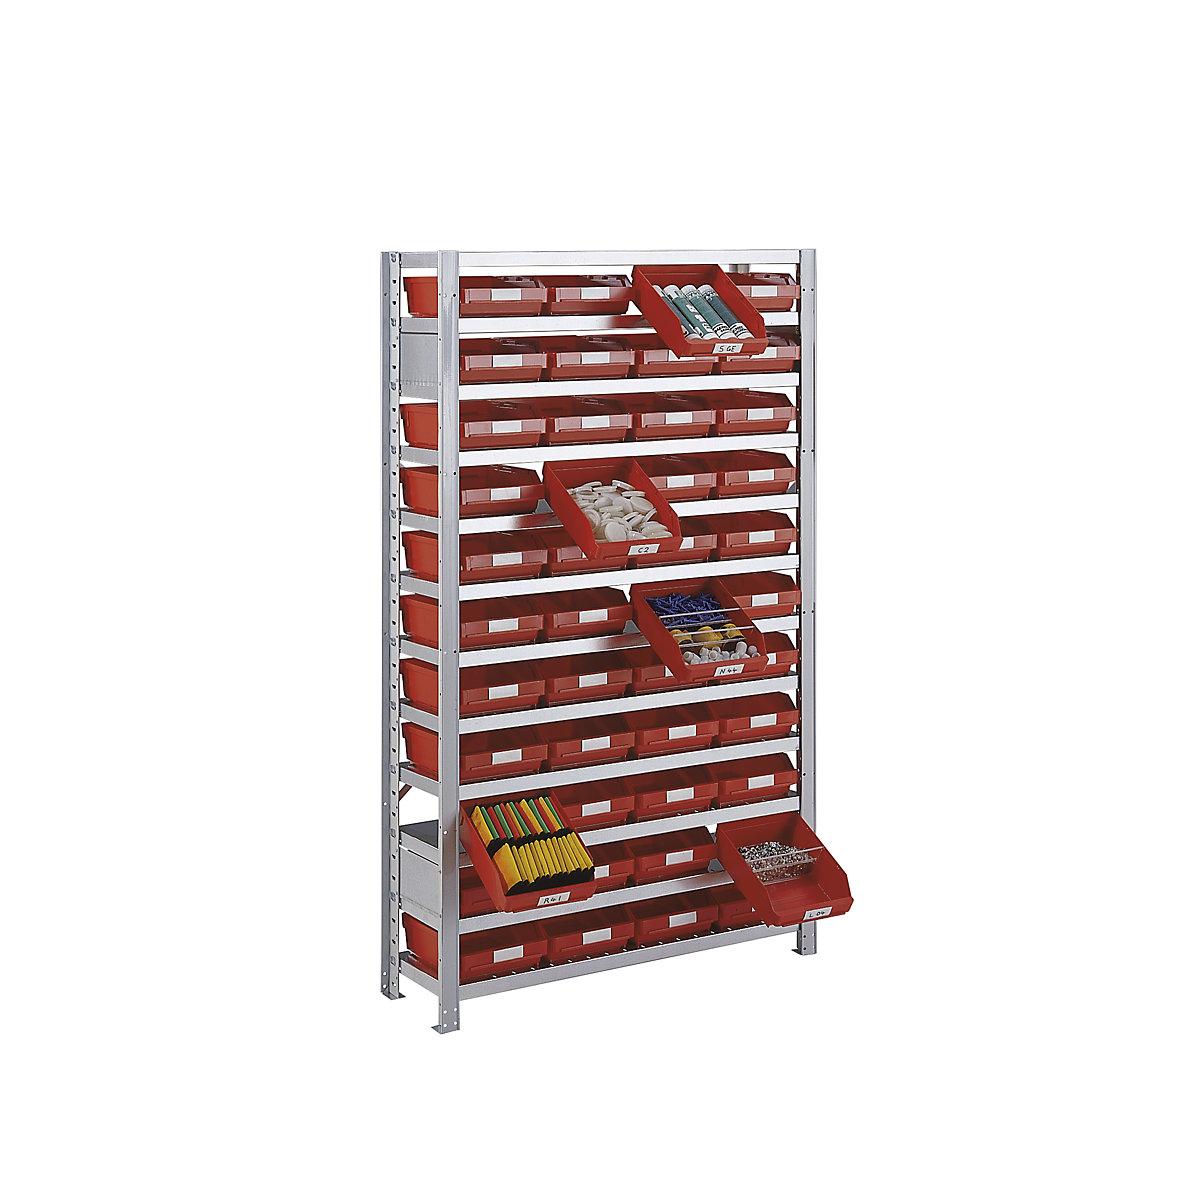 Összedugaszolós állvány dobozokkal – STEMO, állványmagasság 1790 mm, bővítő állvány, 300 mm mély, 44 piros doboz-20